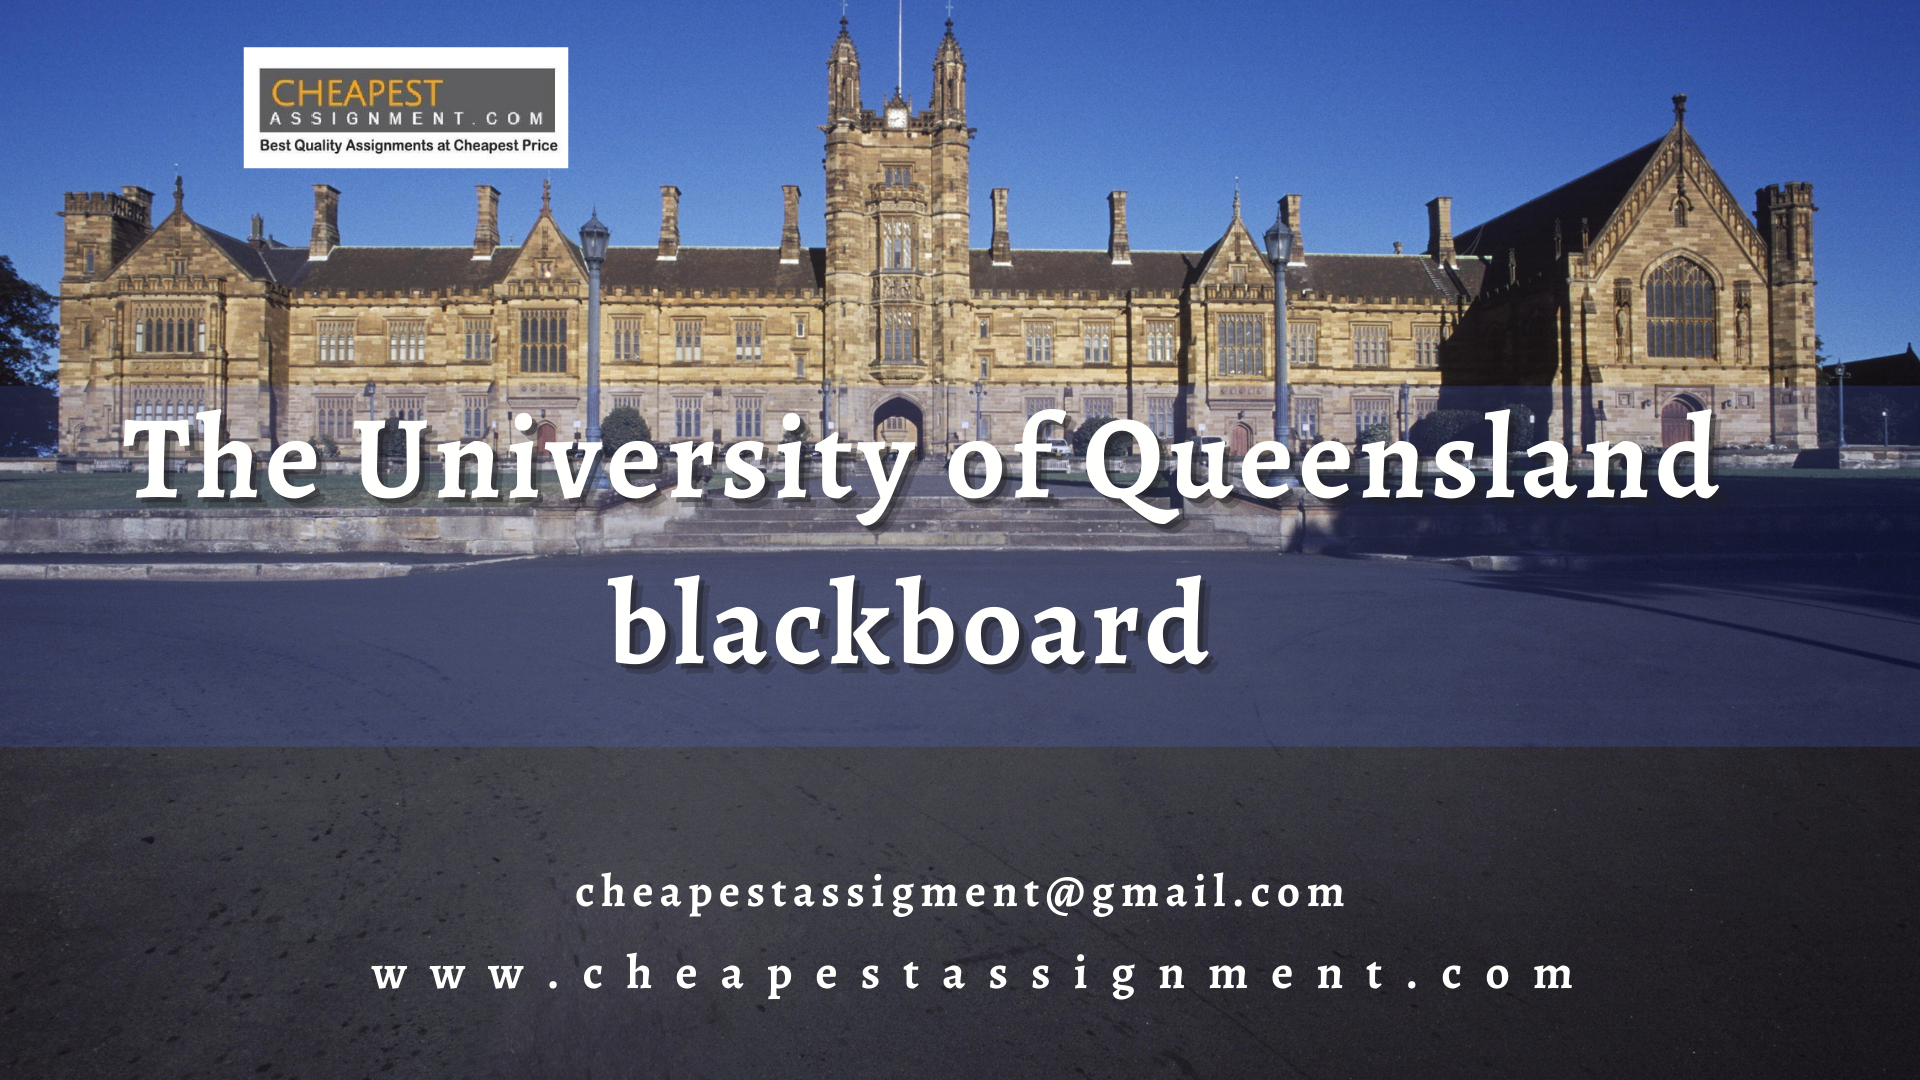 The University of Queensland blackboard